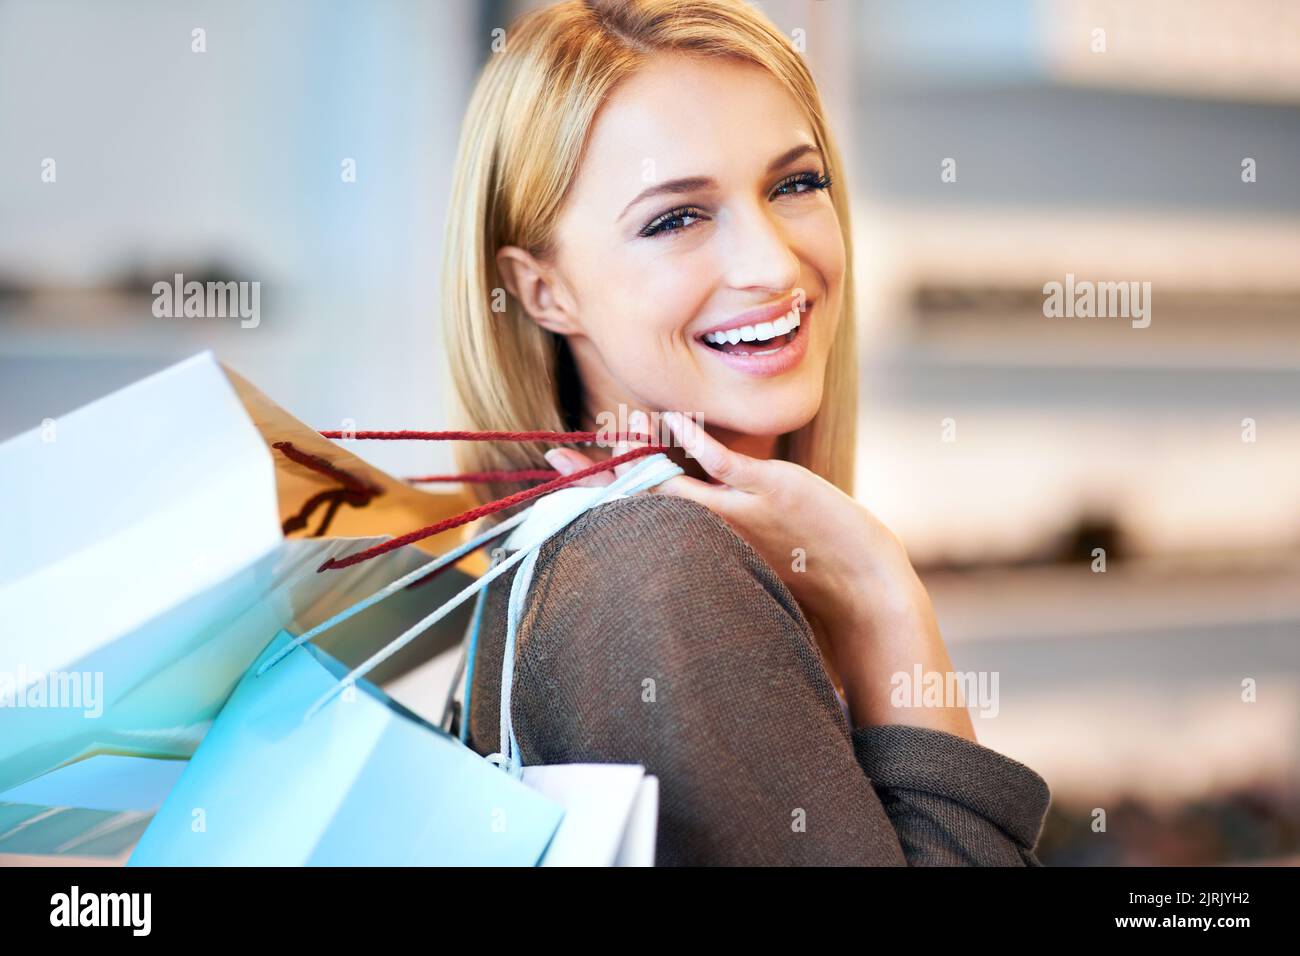 Kunde, der mit einer Einkaufstasche im Einkaufszentrum herumläuft, in einer Designer-Modeboutique mit einem Lächeln und glücklich mit dem Verkauf im Einzelhandelsgeschäft. Porträt des Gesichts der reichen Frau Stockfoto